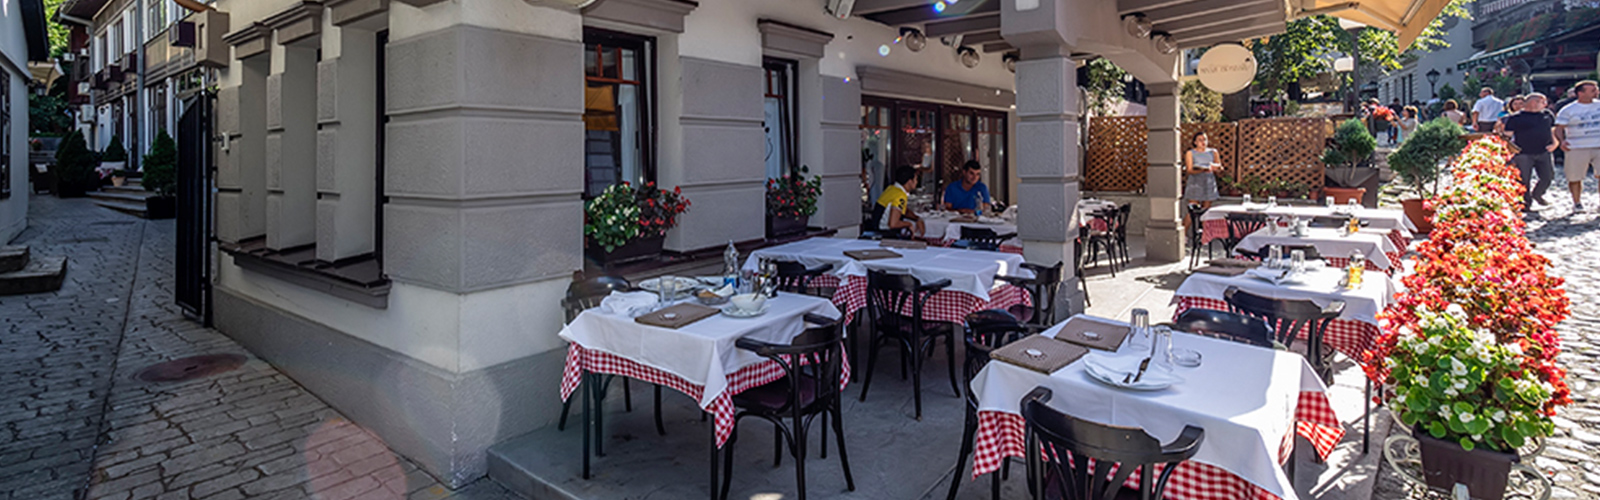 Concierge Belgrade | Restoran Mali vrabac